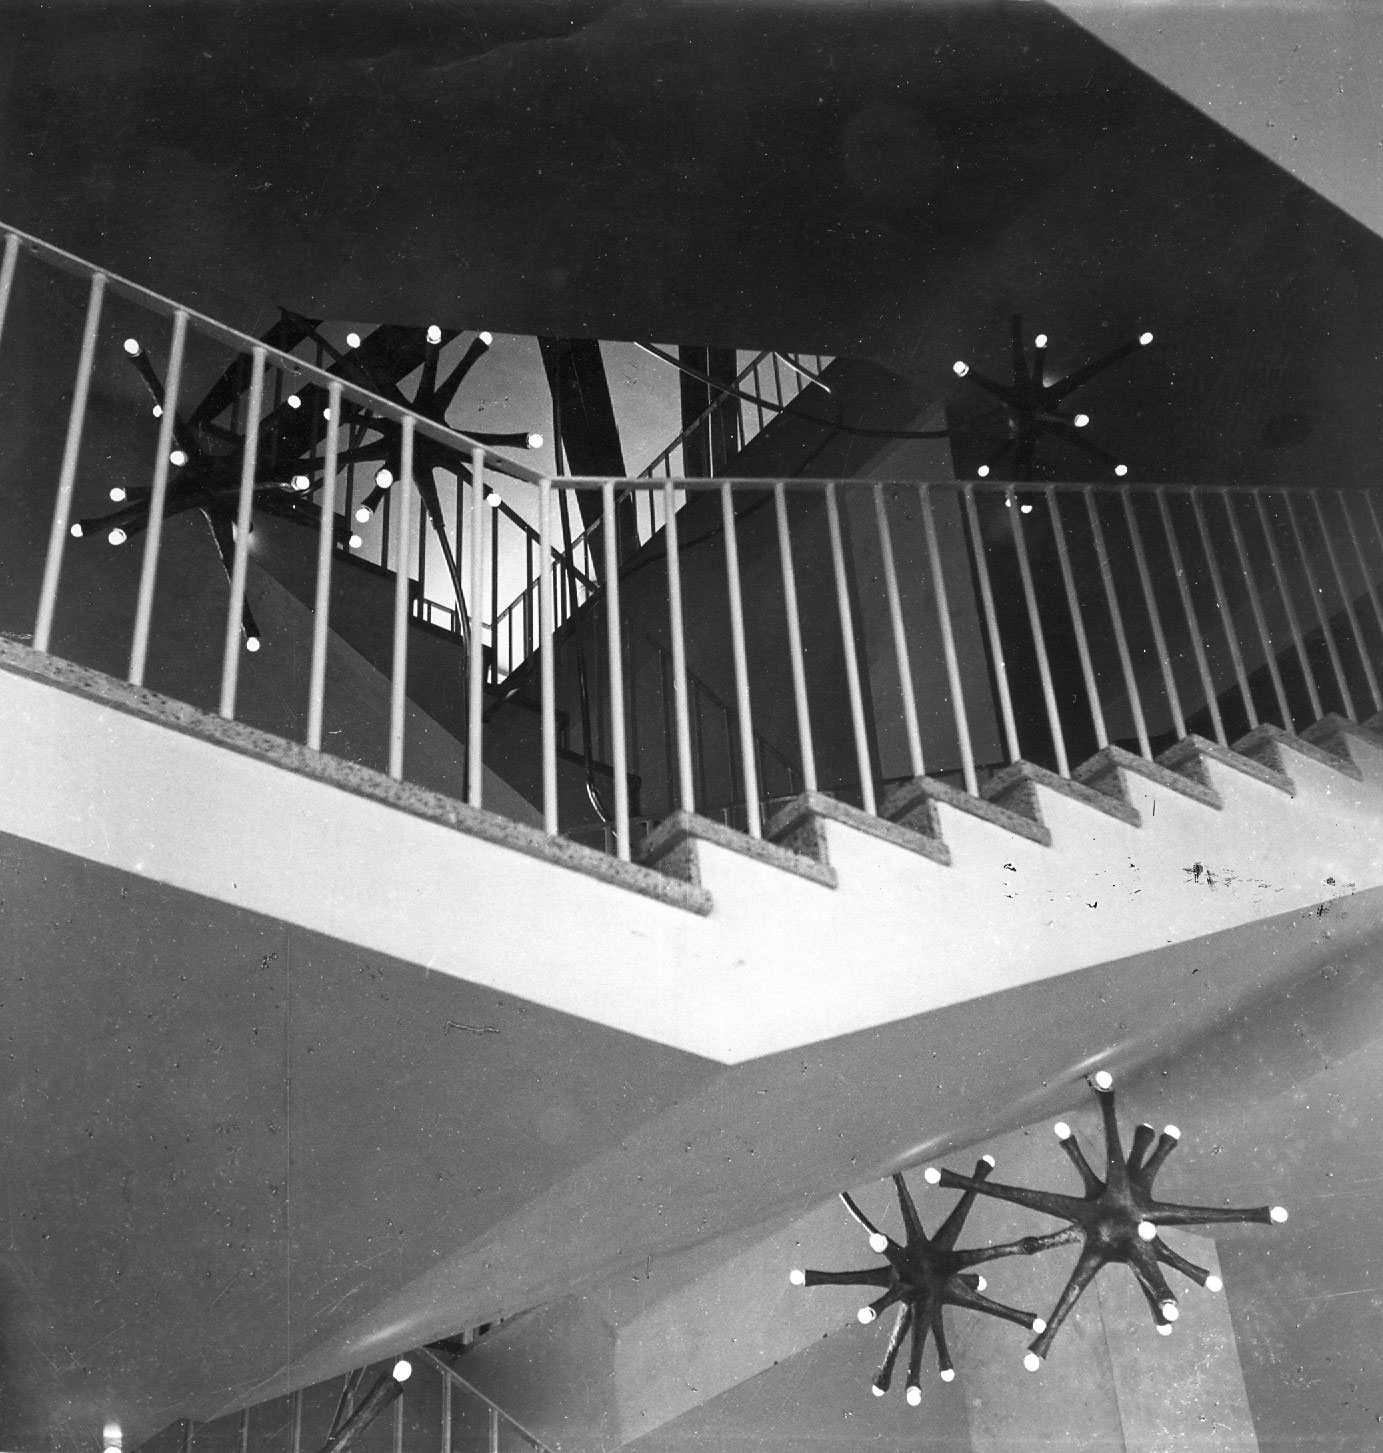 Milton Hebald. Stairwell Light Sculpture, Steel Isla verdi Airport, San Juan Puerto Rico, 1954